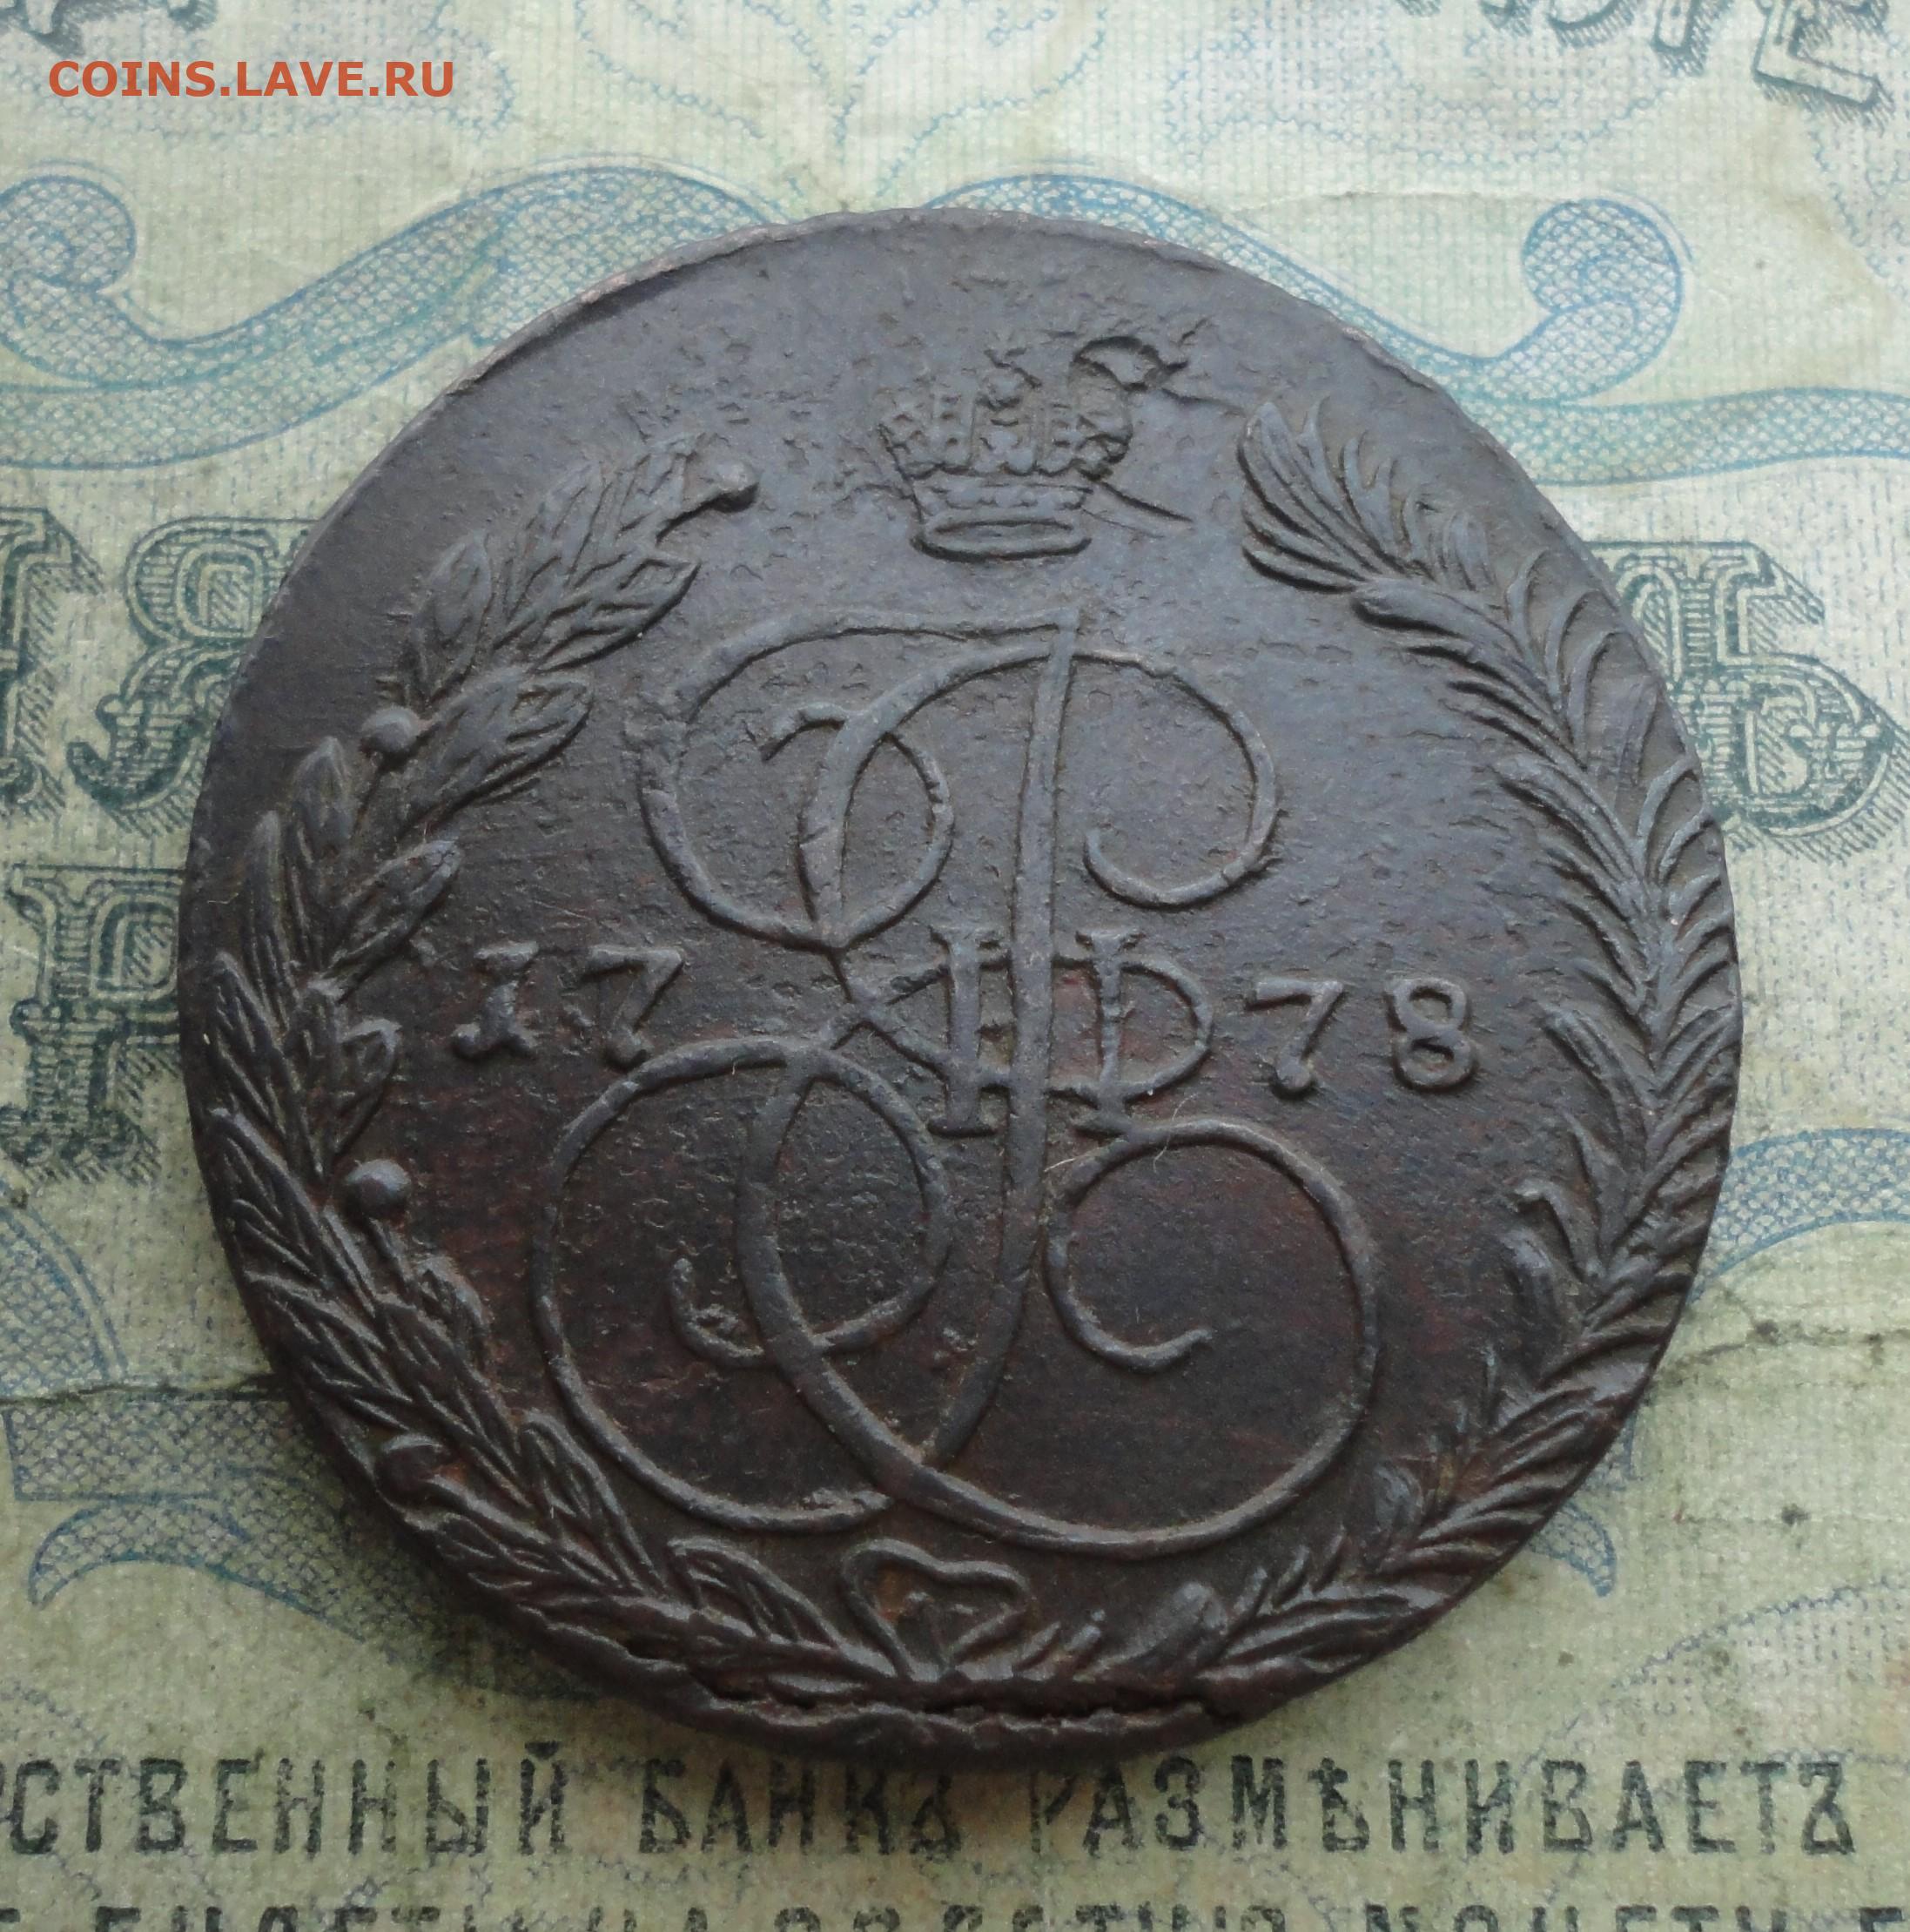 60 рублей 25 копеек. 10000 Для 1781 года в России. Фото 1781 года в СССР.